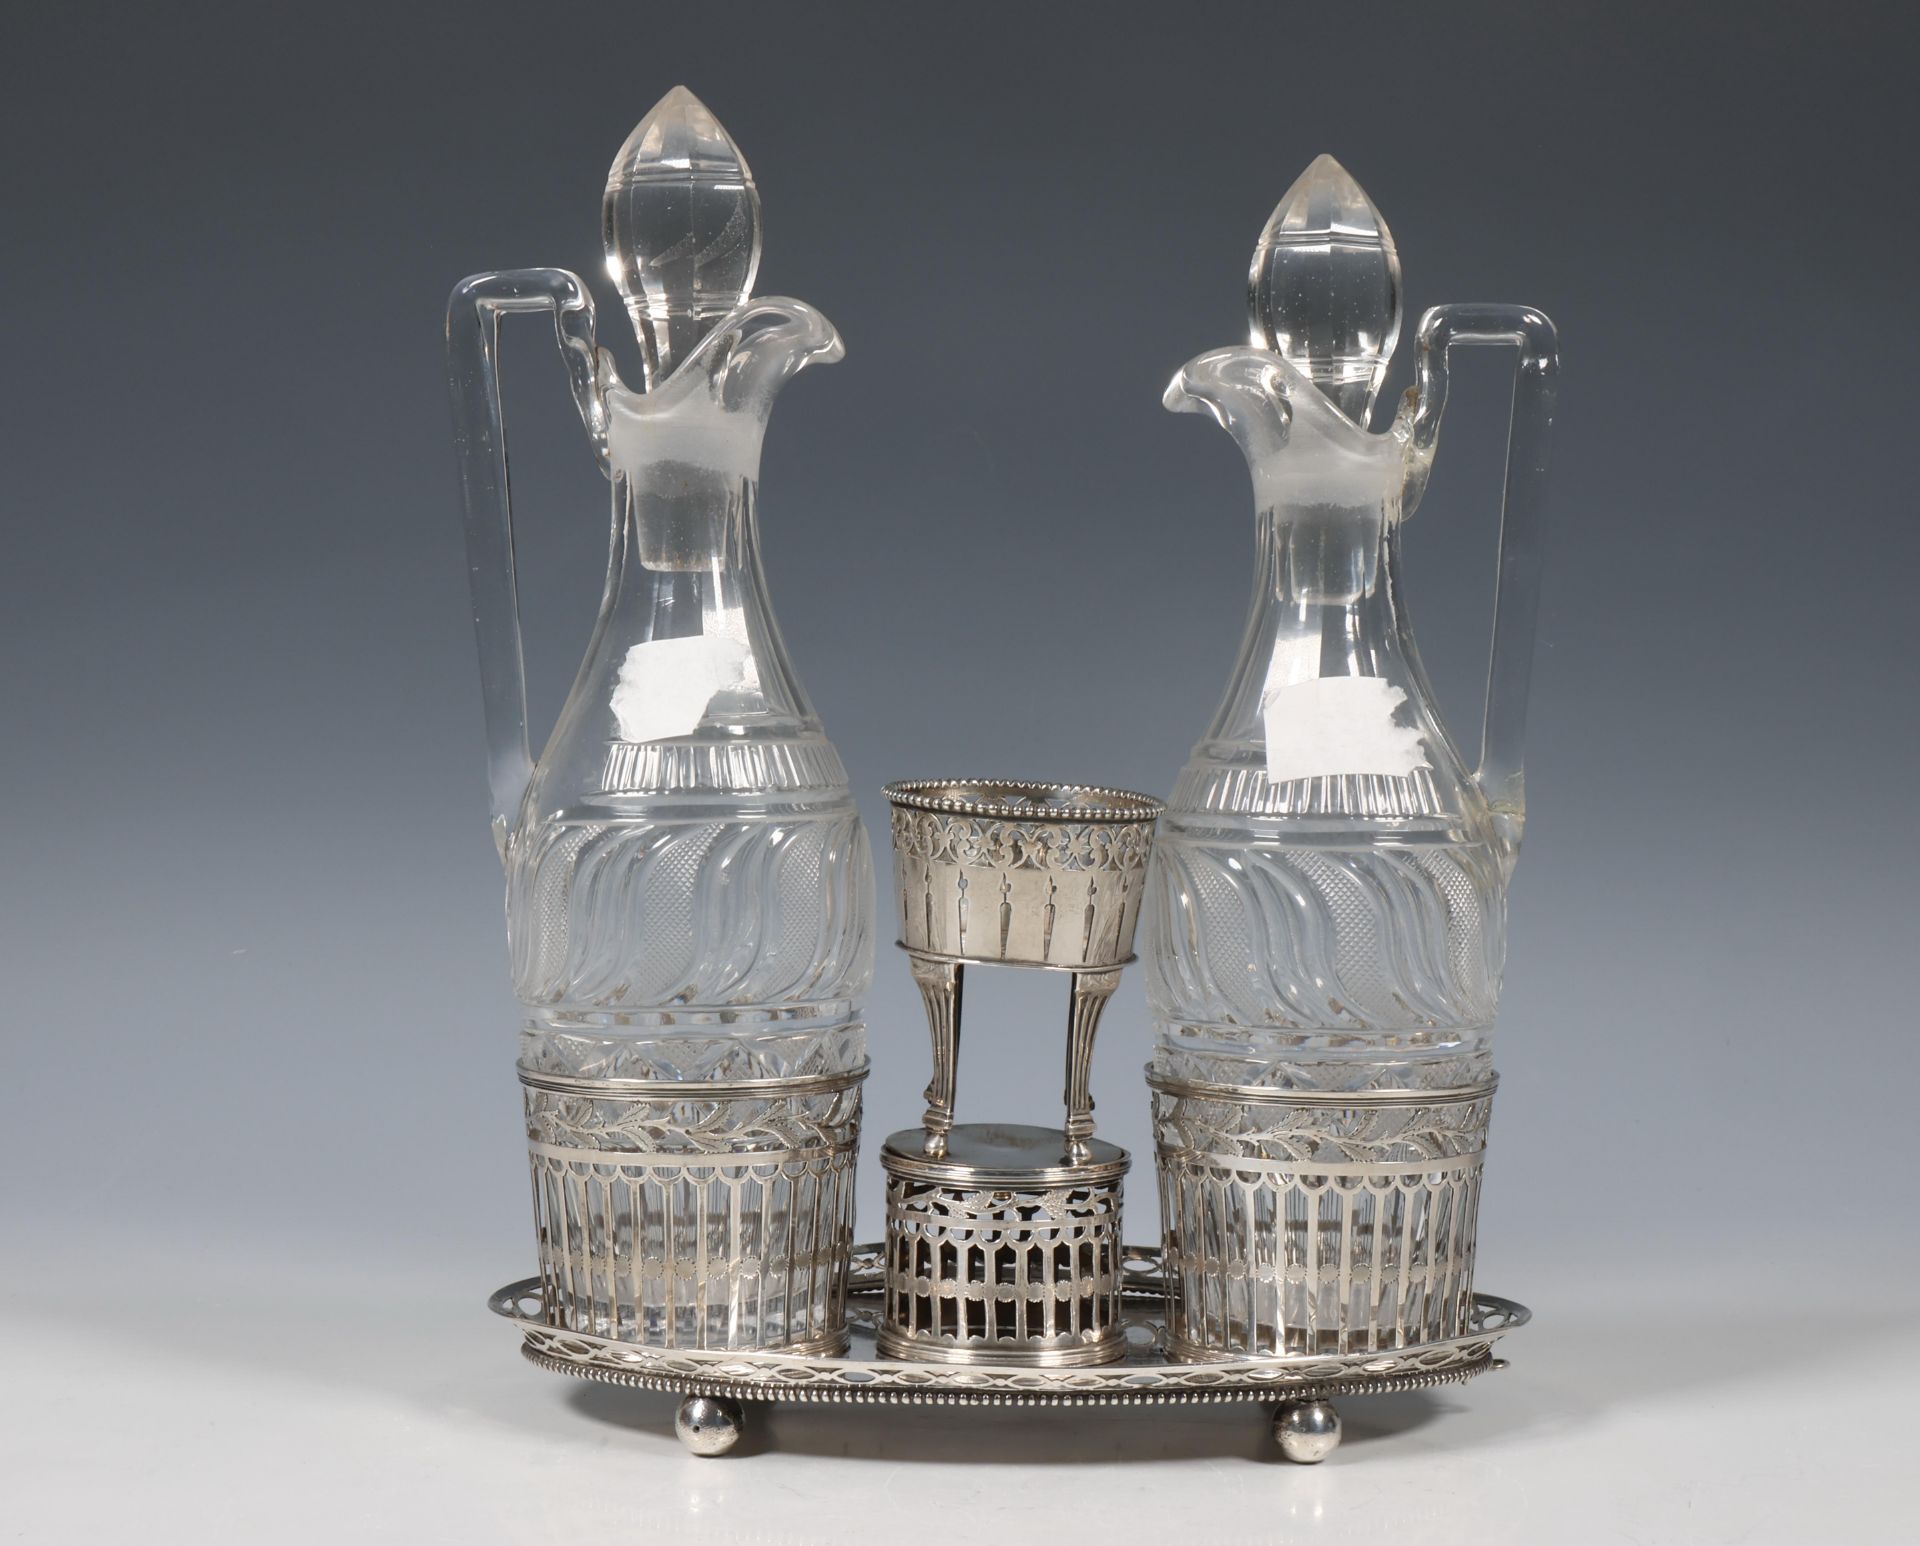 Kristallen olie- en azijnstel met zilveren houder, vroeg 19e eeuw, - Bild 2 aus 2